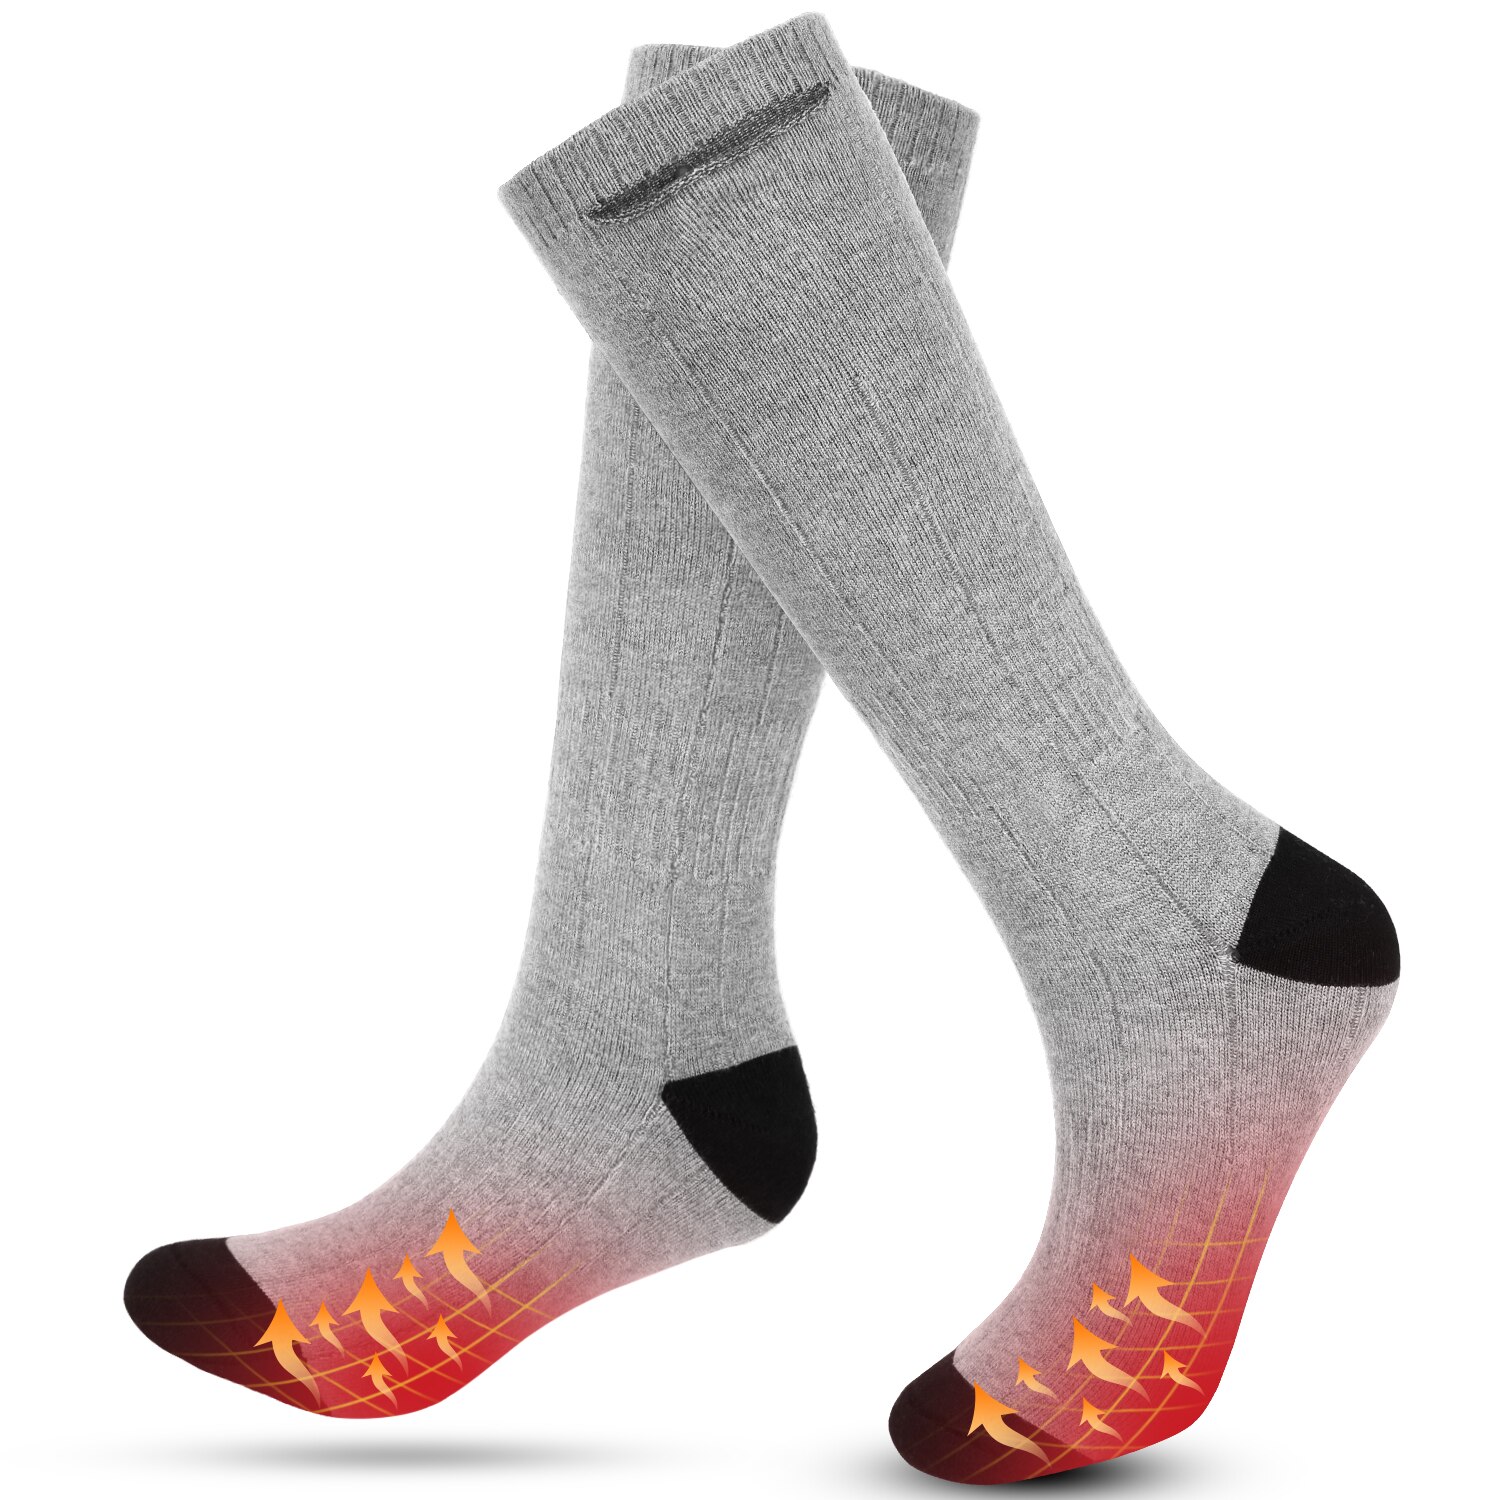 Vinter varme opvarmede sokker genopladelige elektriske varmestrømper vandtætte mænd kvinder strømpe til udendørs camping vandreture skiiing: Type 2 lys grå